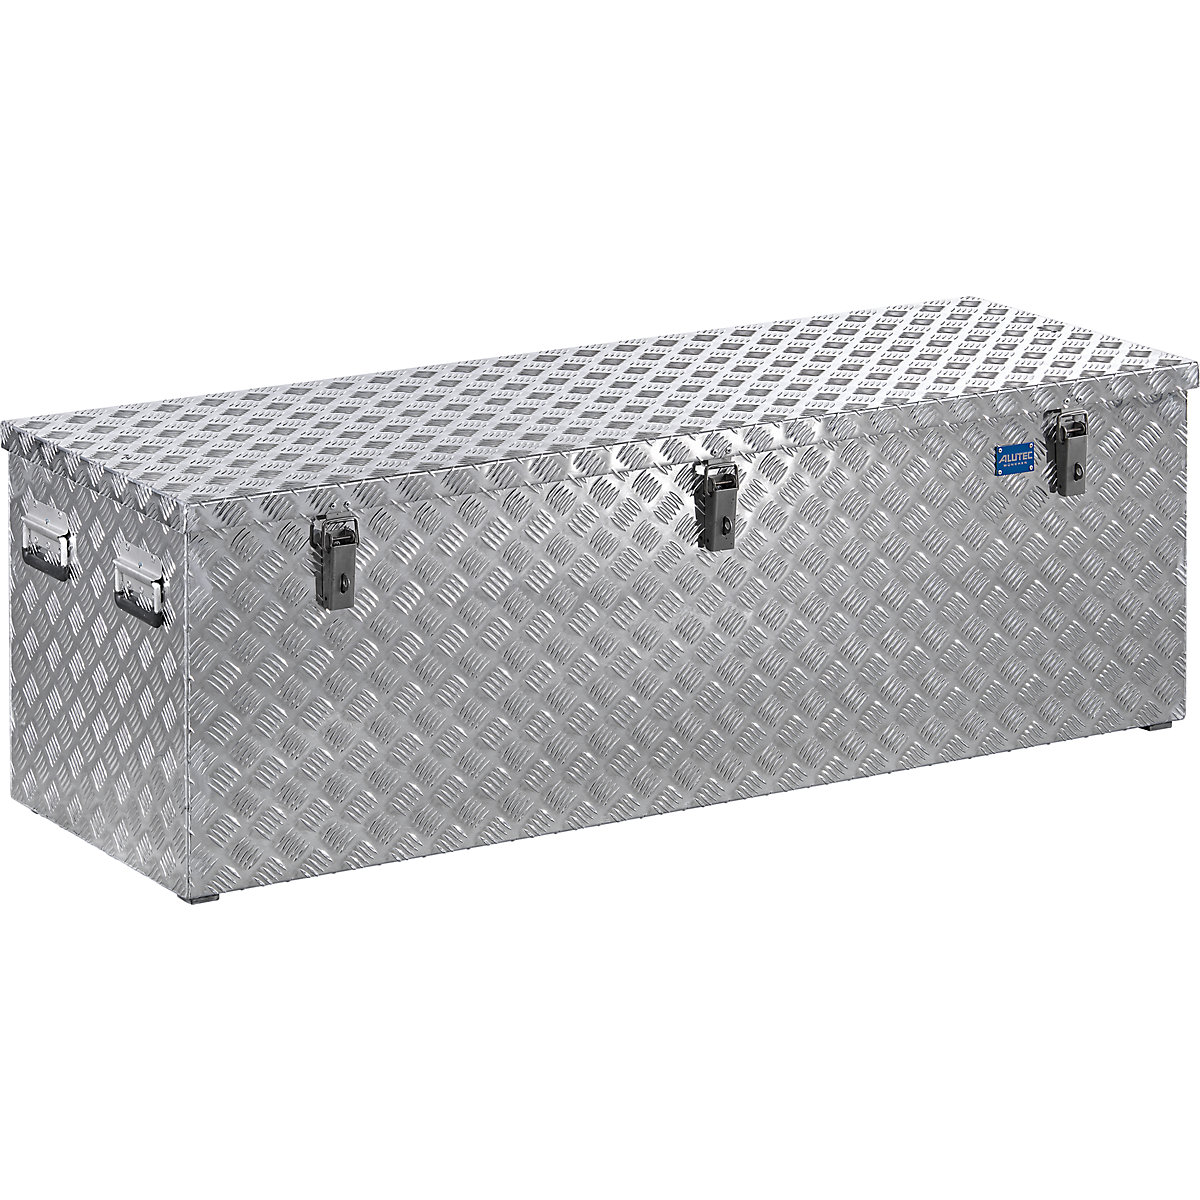 Aluminijski transportni kovčeg s rebrastim limom, s plinskim prigušnikom, volumen 375 l-13